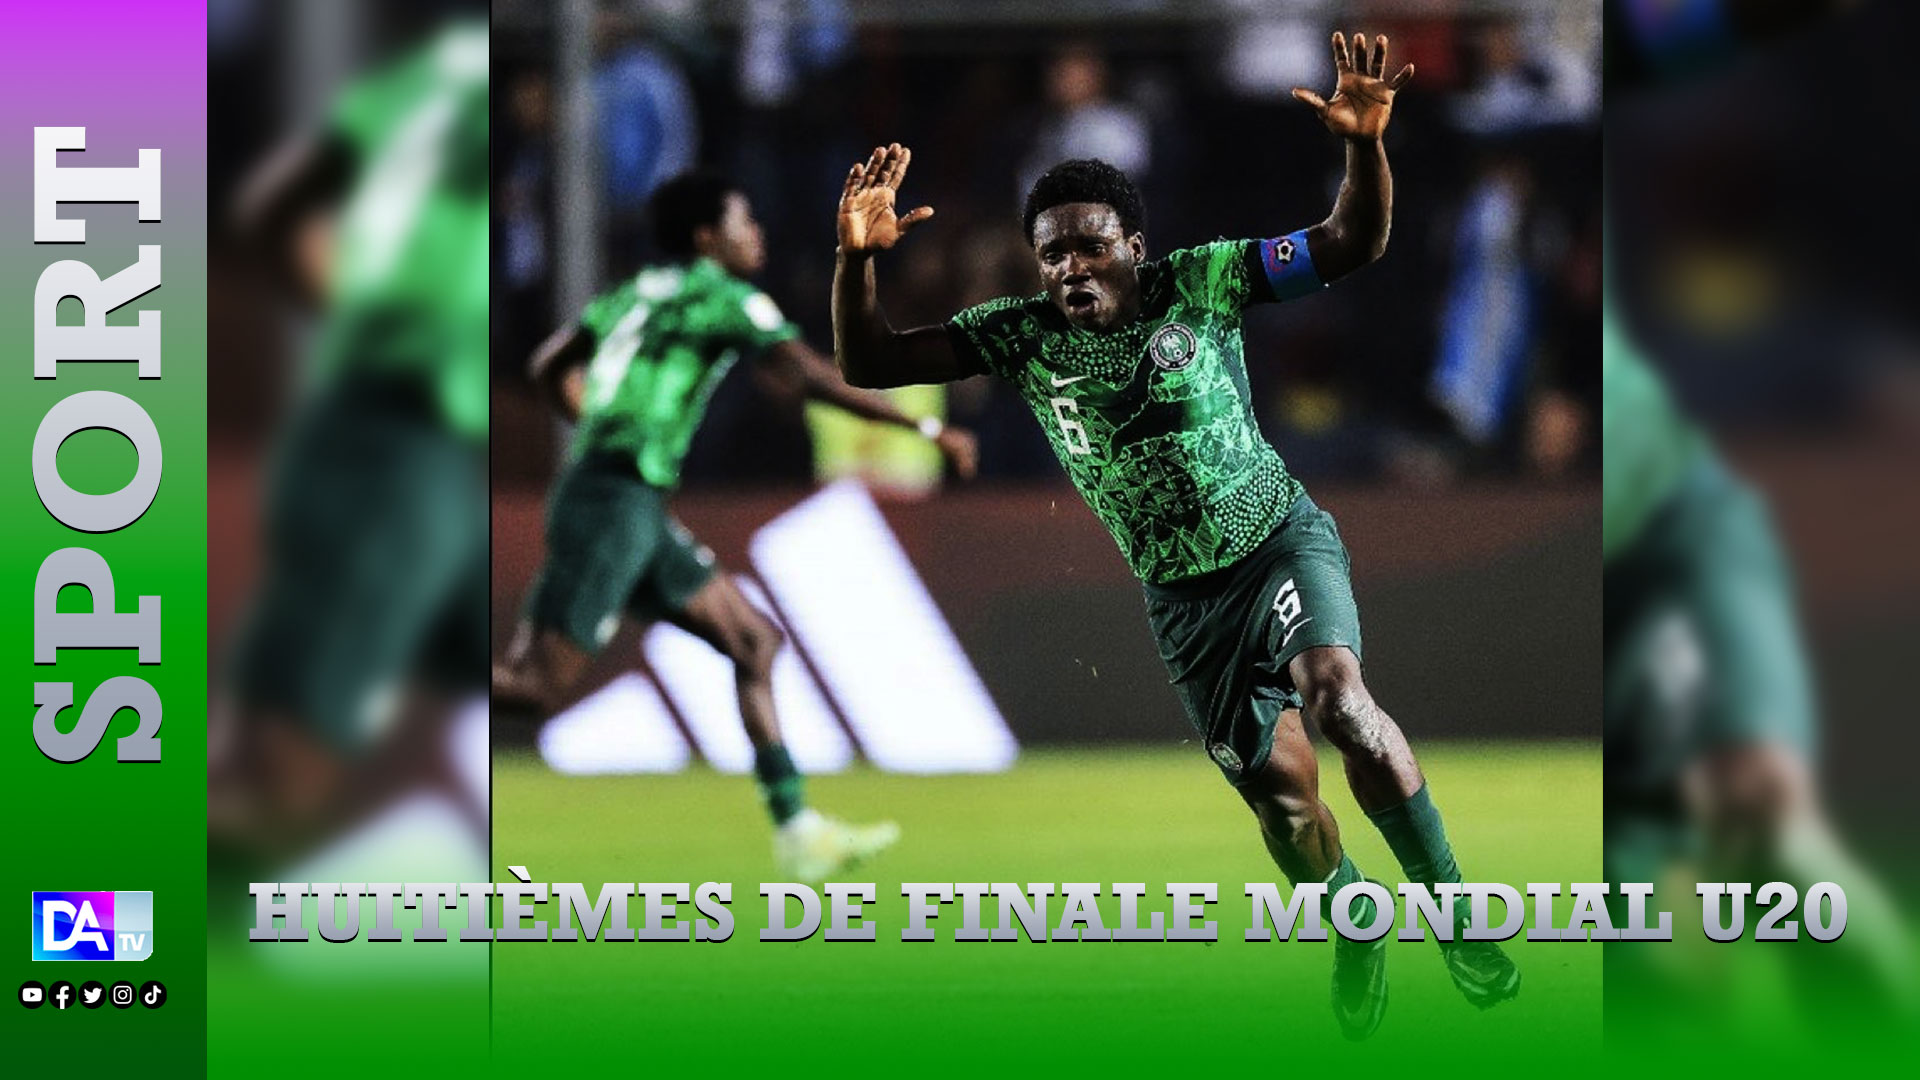 Huitièmes de finale Mondial U20 : Grosse surprise avec la victoire du Nigeria qui élimine l’Argentine